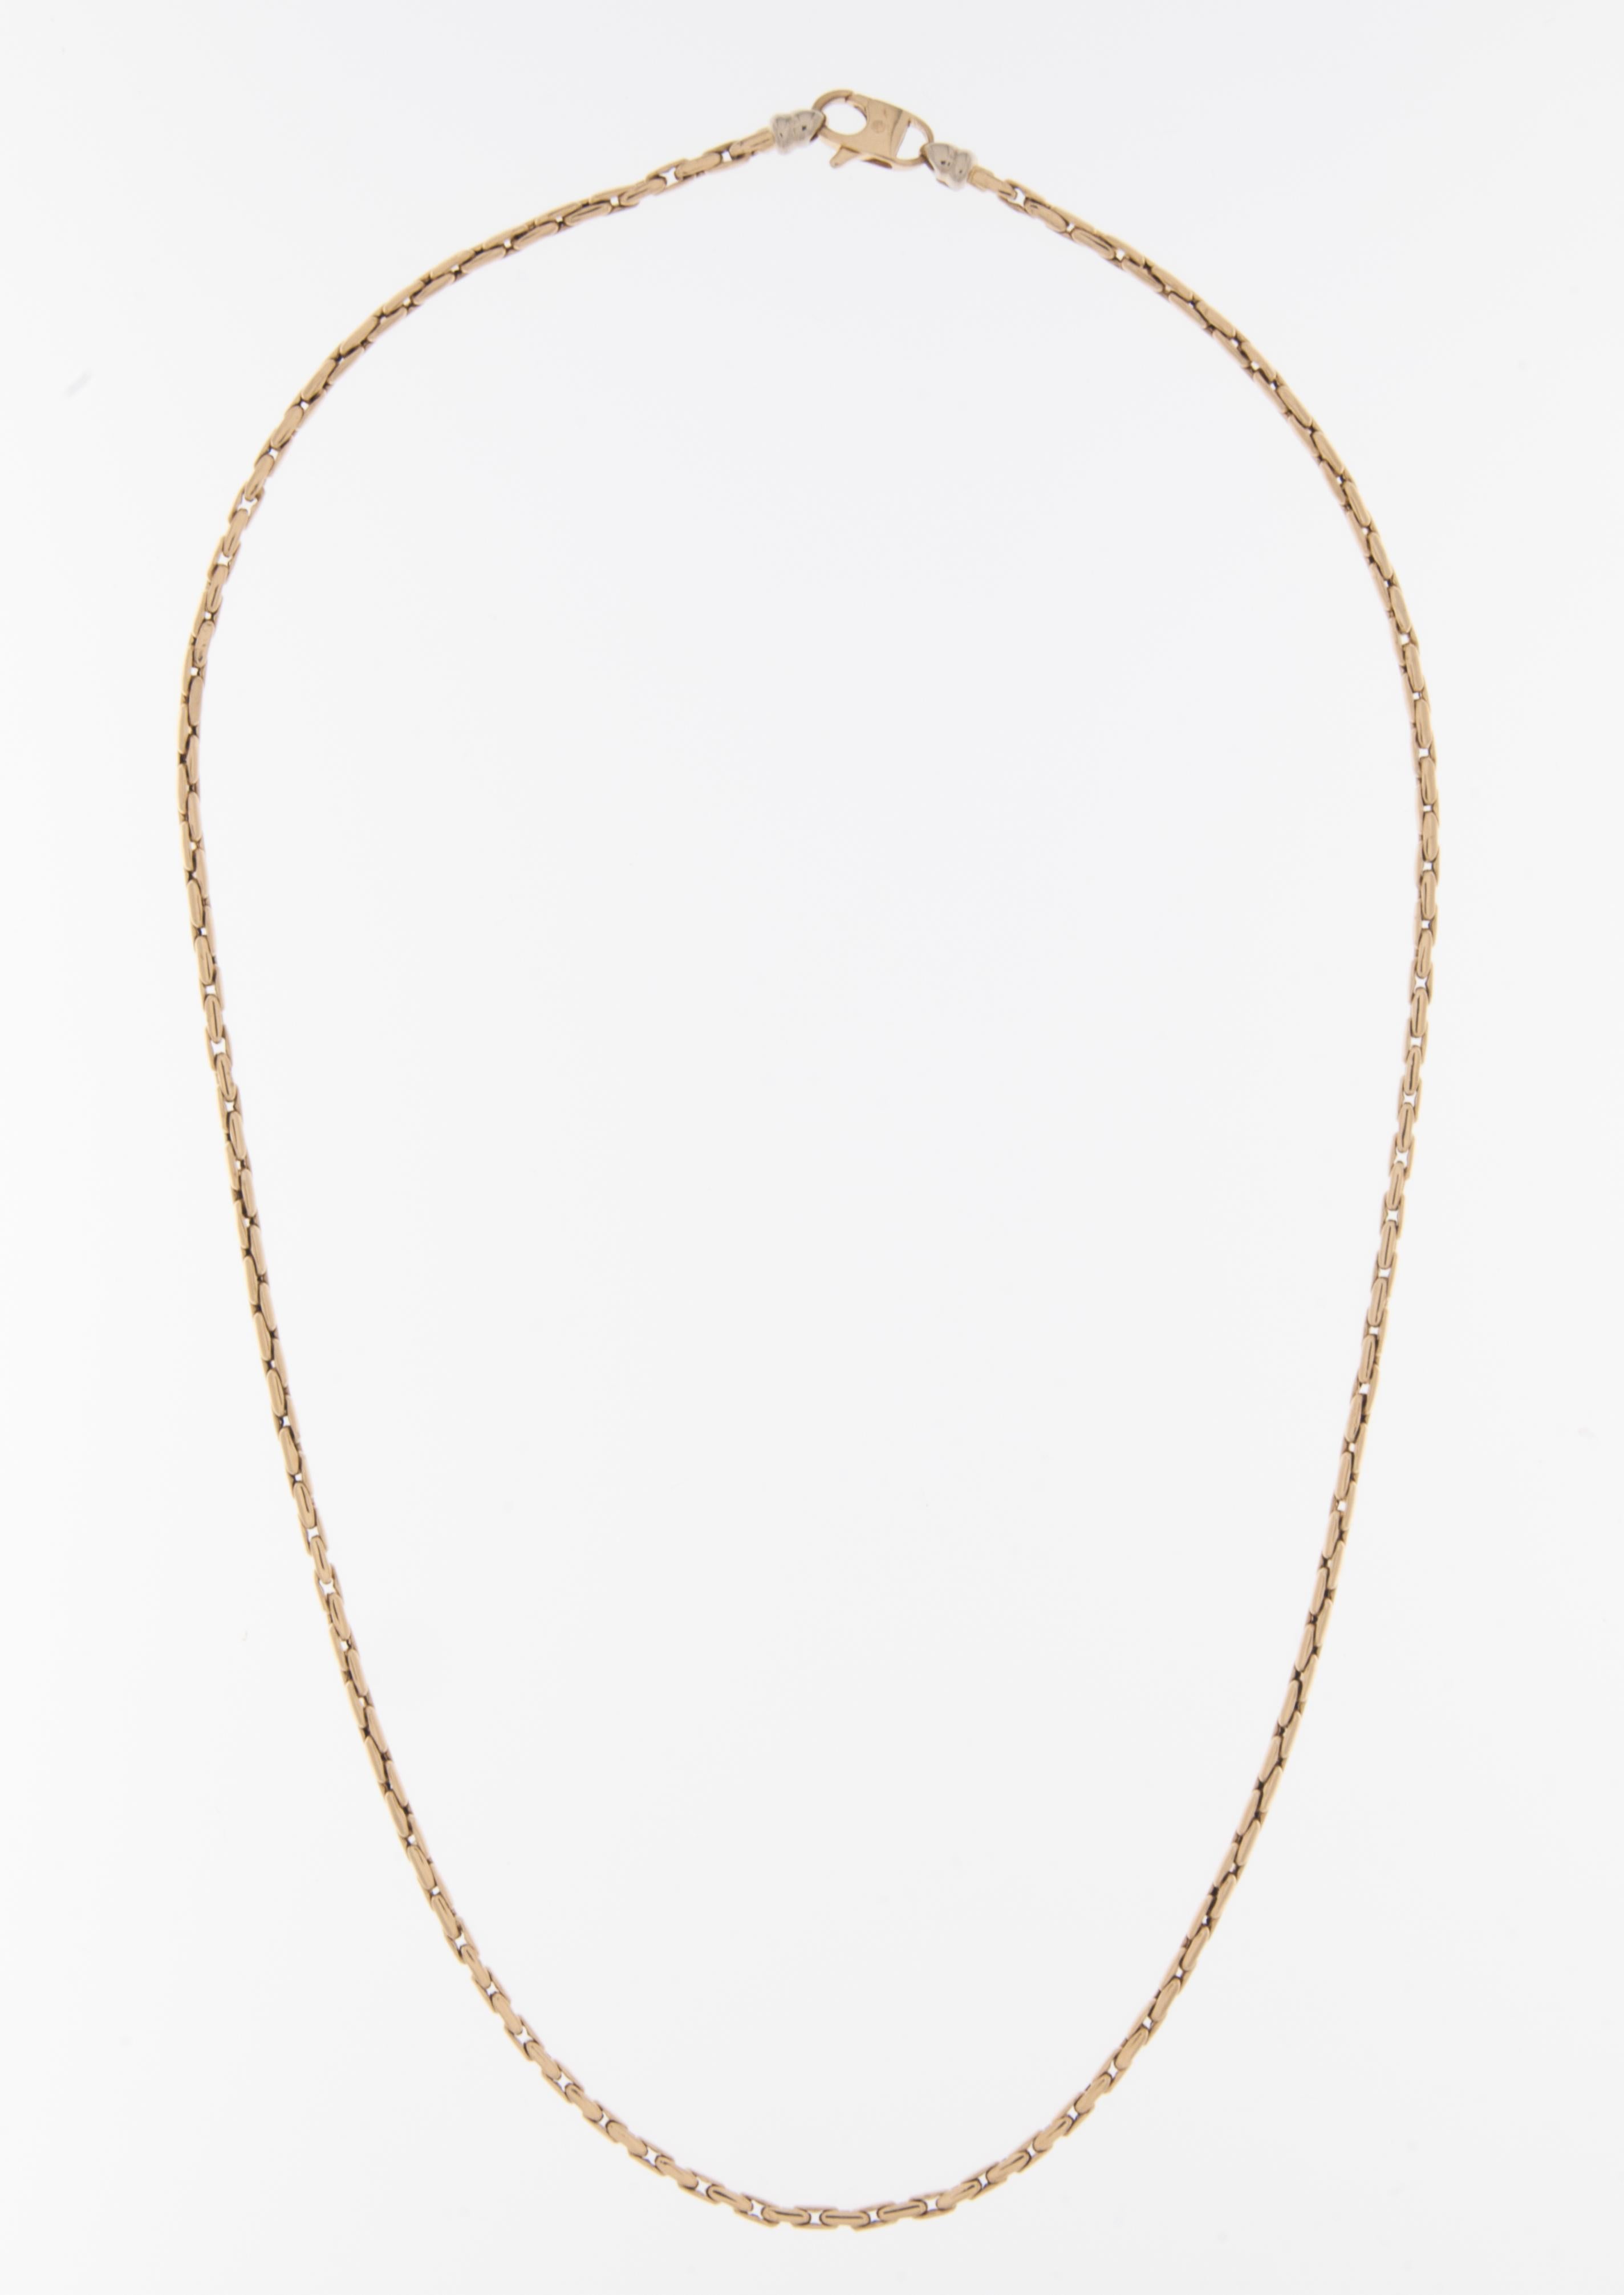 Die italienische Halskette Modern aus 18 Karat Gelbgold ist ein modernes und stilvolles Schmuckstück, das italienische Handwerkskunst und Design verkörpert. Diese mit Präzision und Liebe zum Detail gefertigte Halskette spiegelt die moderne Ästhetik